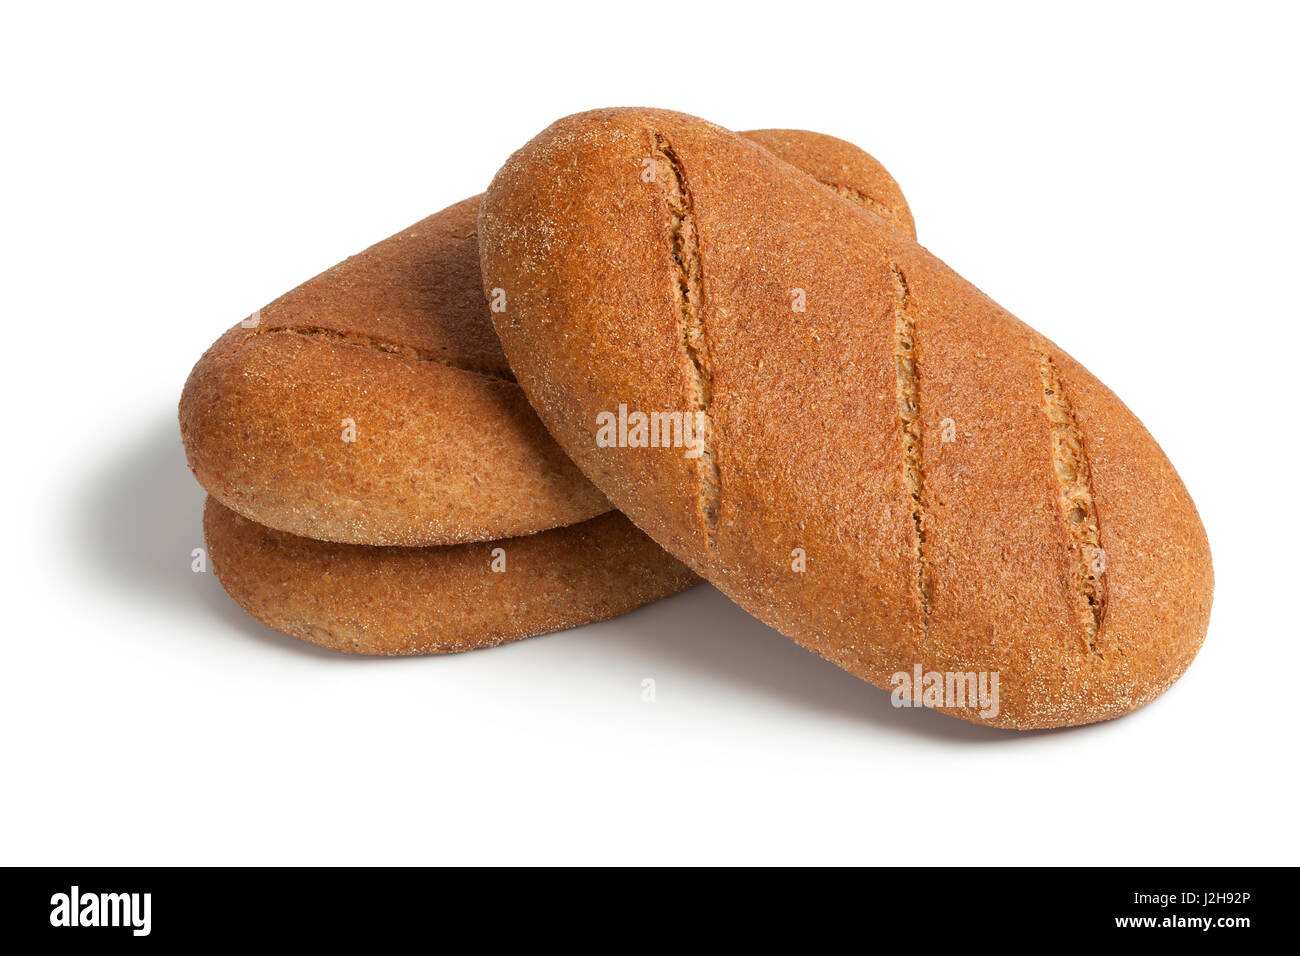 Marocain frais cuit le pain brun sur fond blanc Banque D'Images